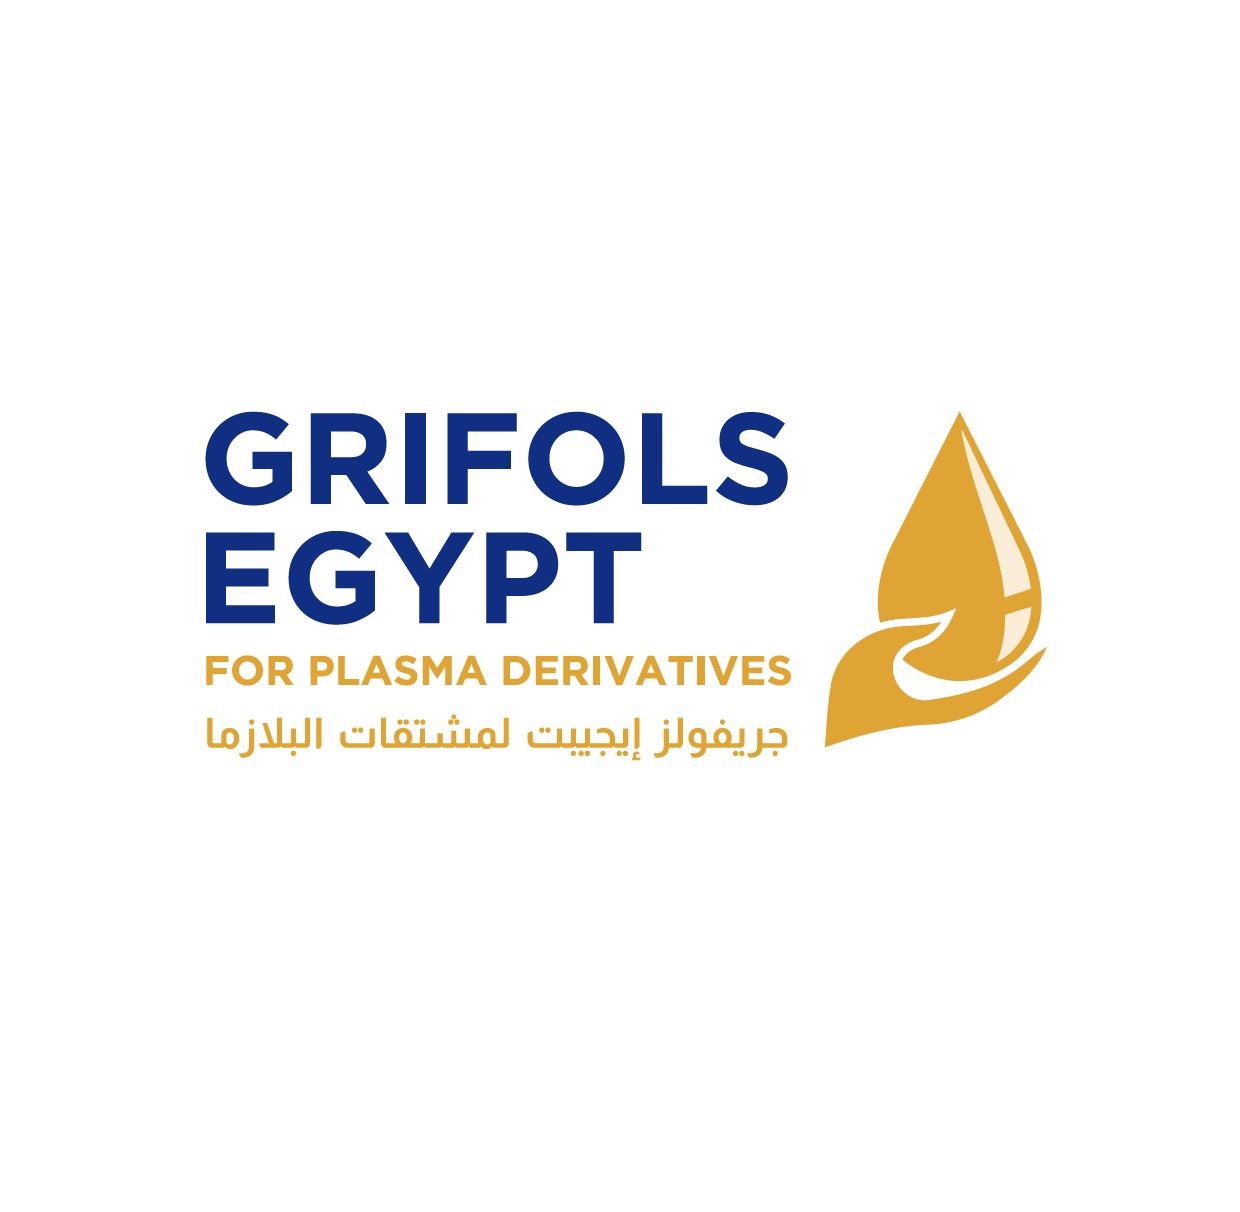 Grifols Egypt PIasma